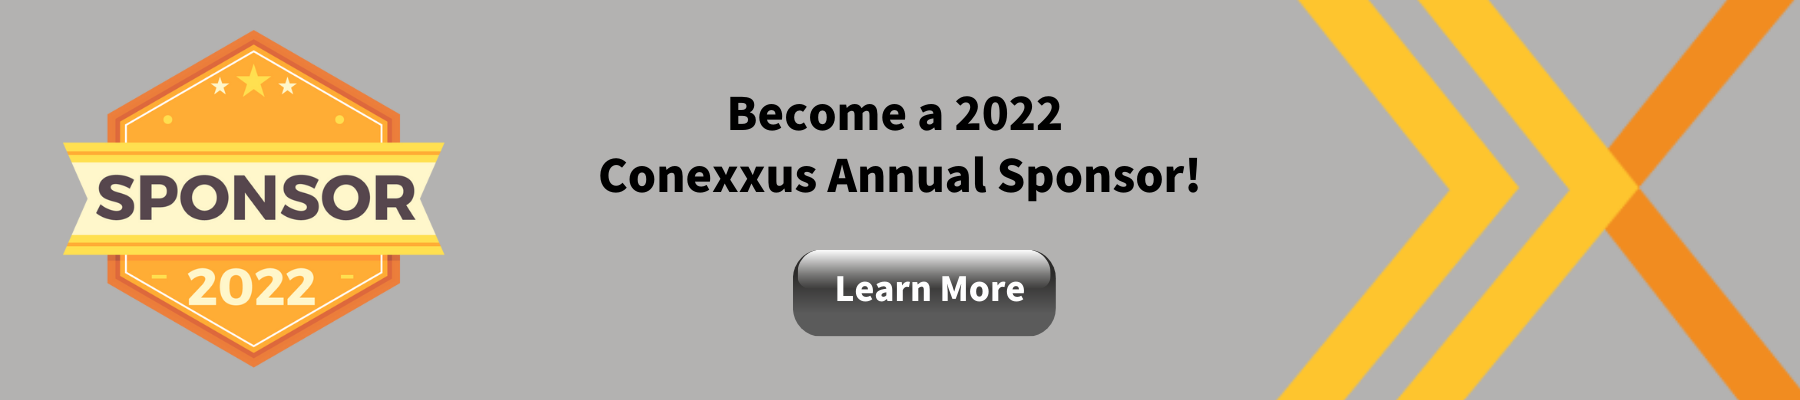 2022 sponsorship